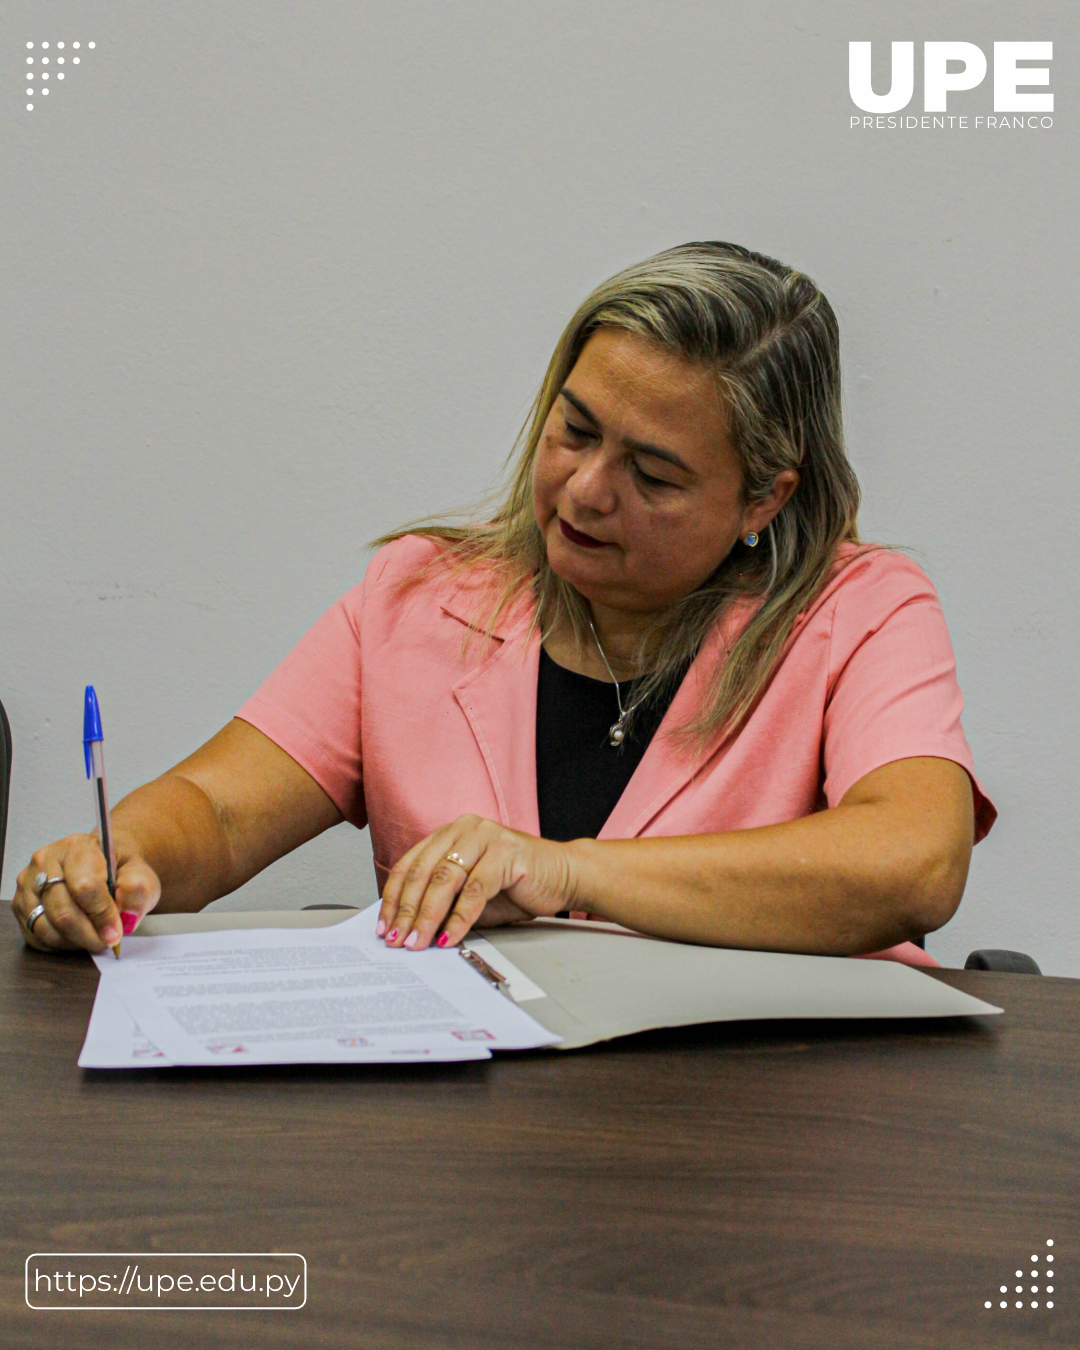 Firma de Convenio entre la UPE y el Colegio Nacional Paraguay Brasil 